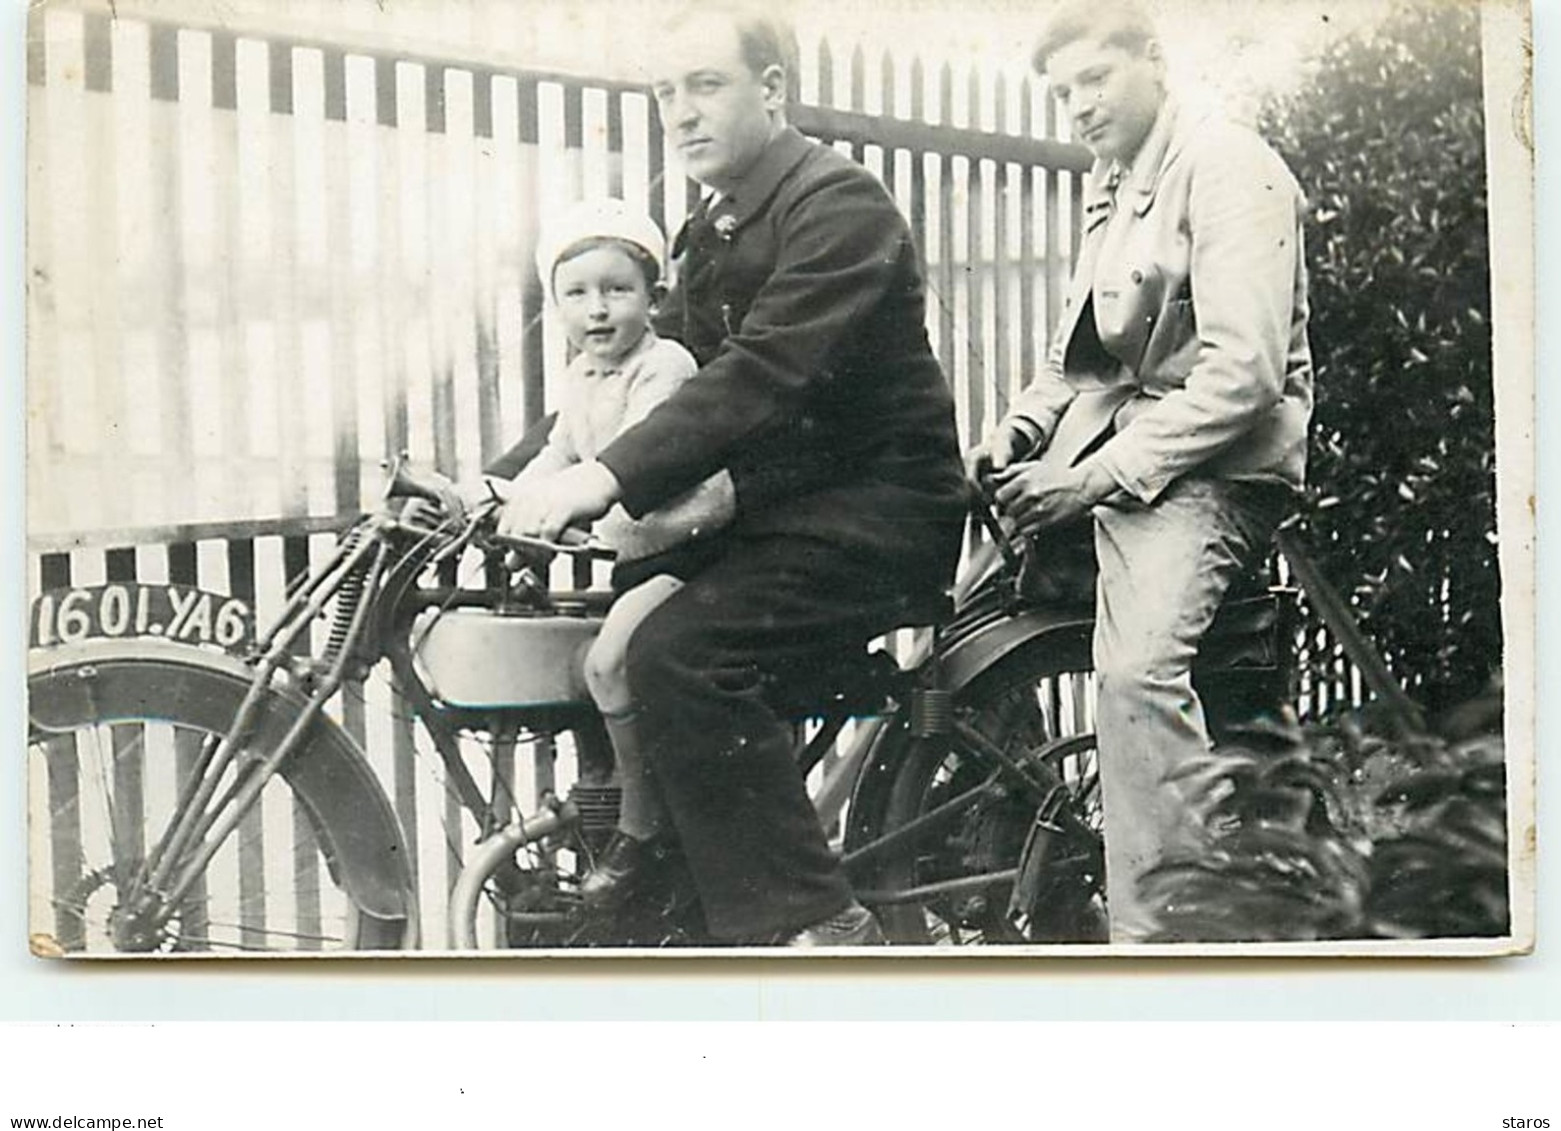 Carte-Photo - Deux Hommes Et Un Enfant Sur Une Moto - Motorräder